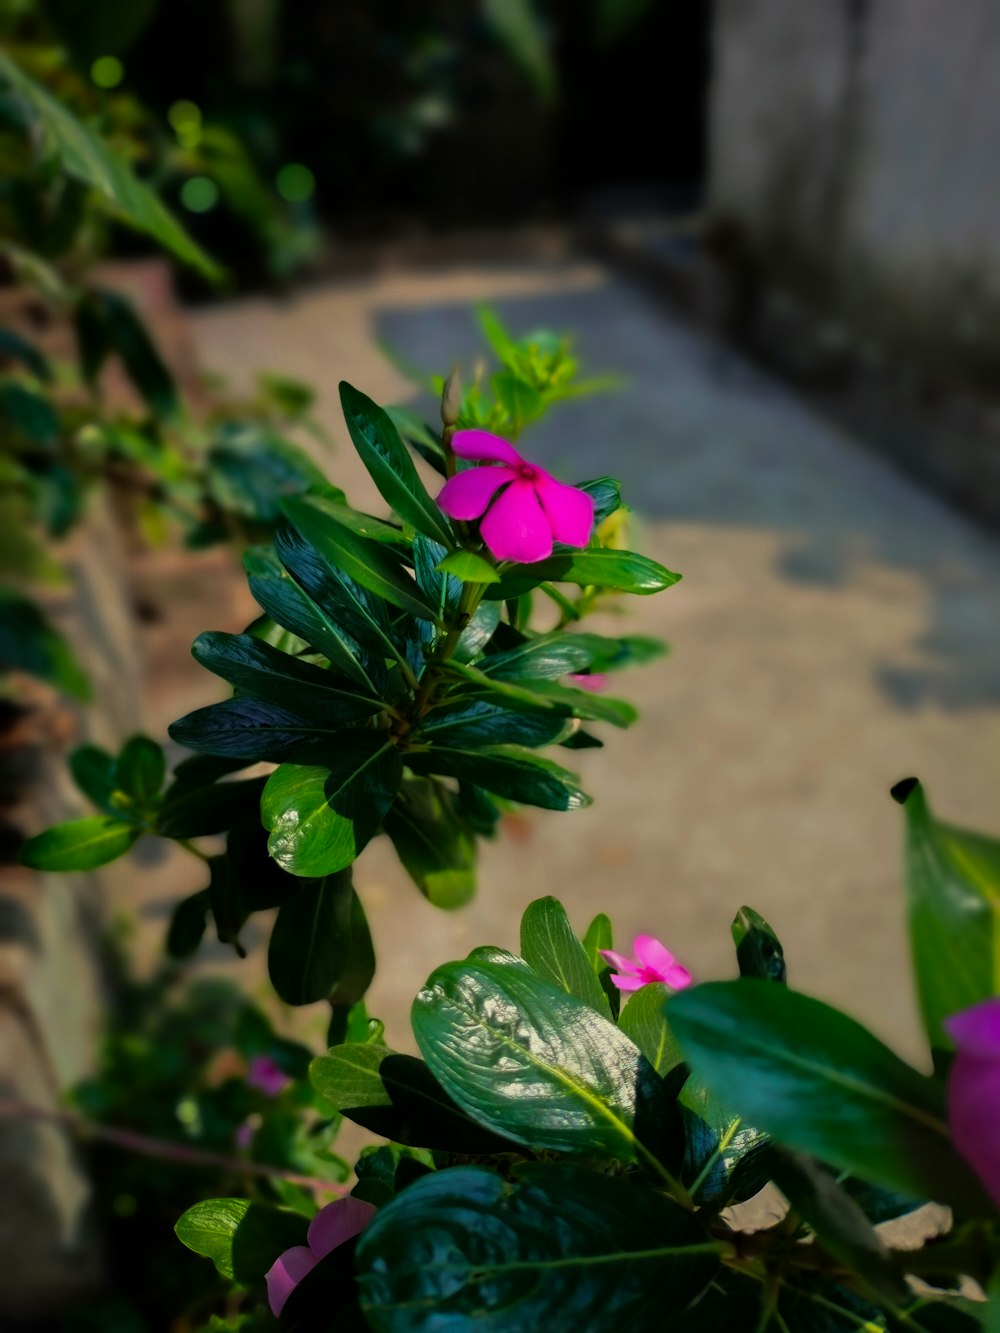 무성한 녹색 식물 위에 앉아있는 분홍색 꽃